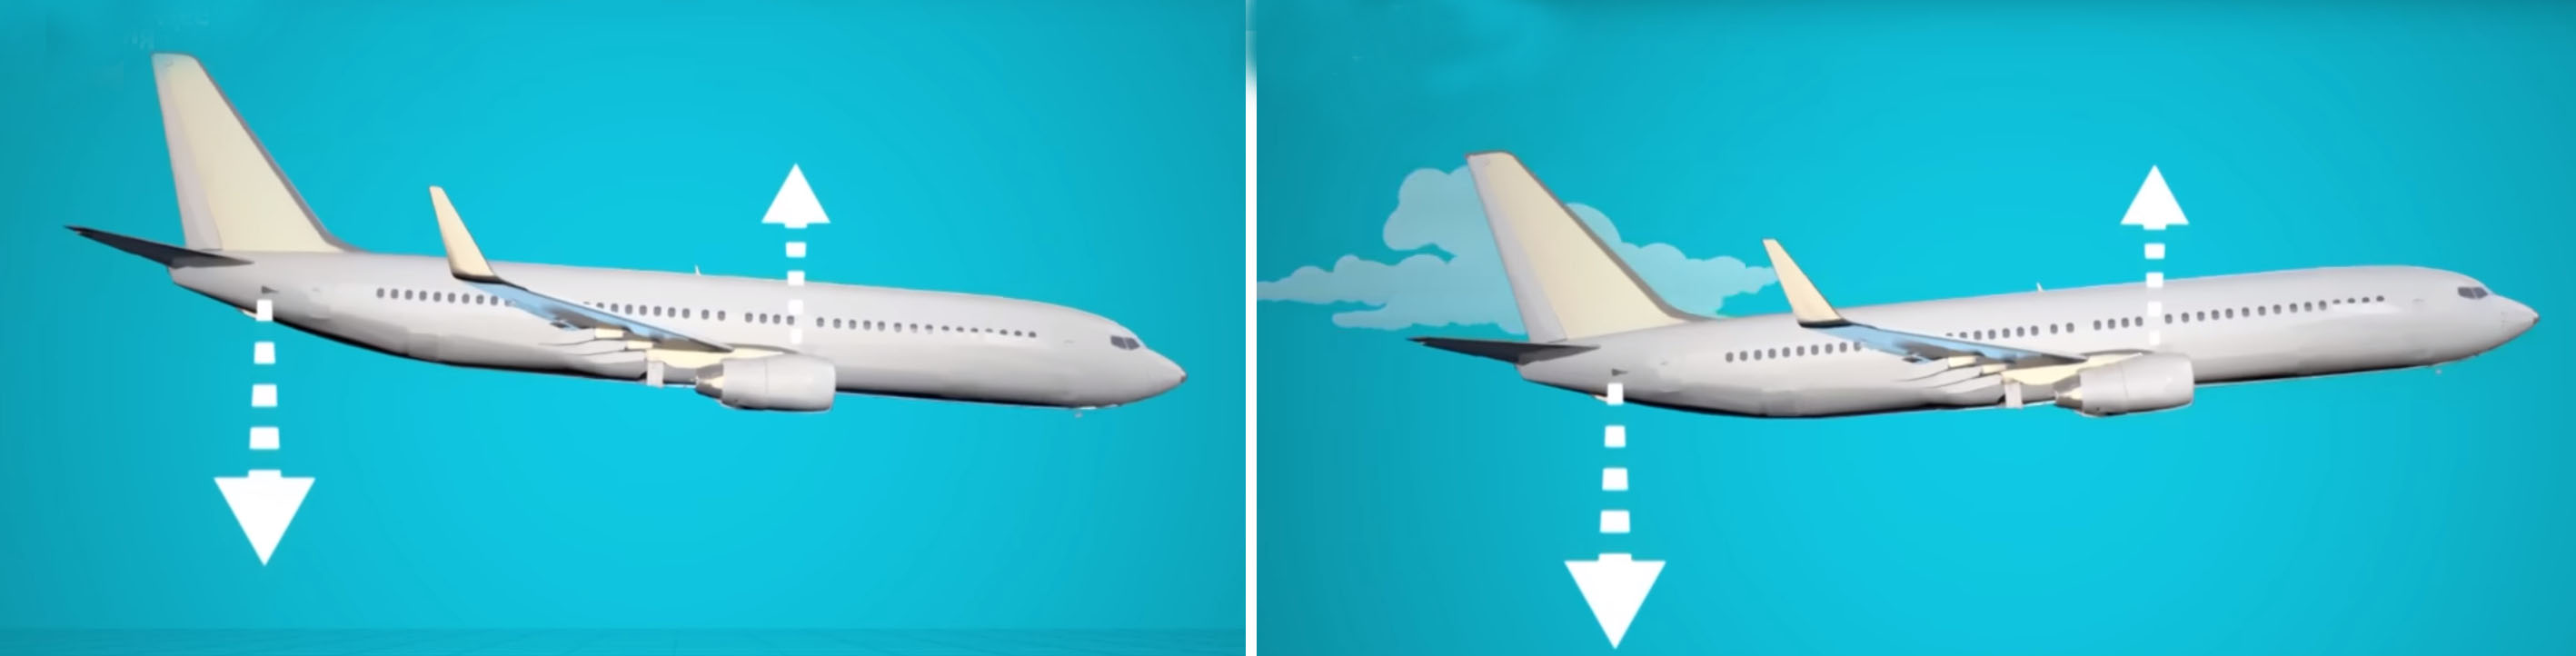 Boeing 737 MAX 8 катастрофа Эфиопия характеристики  маневрирования